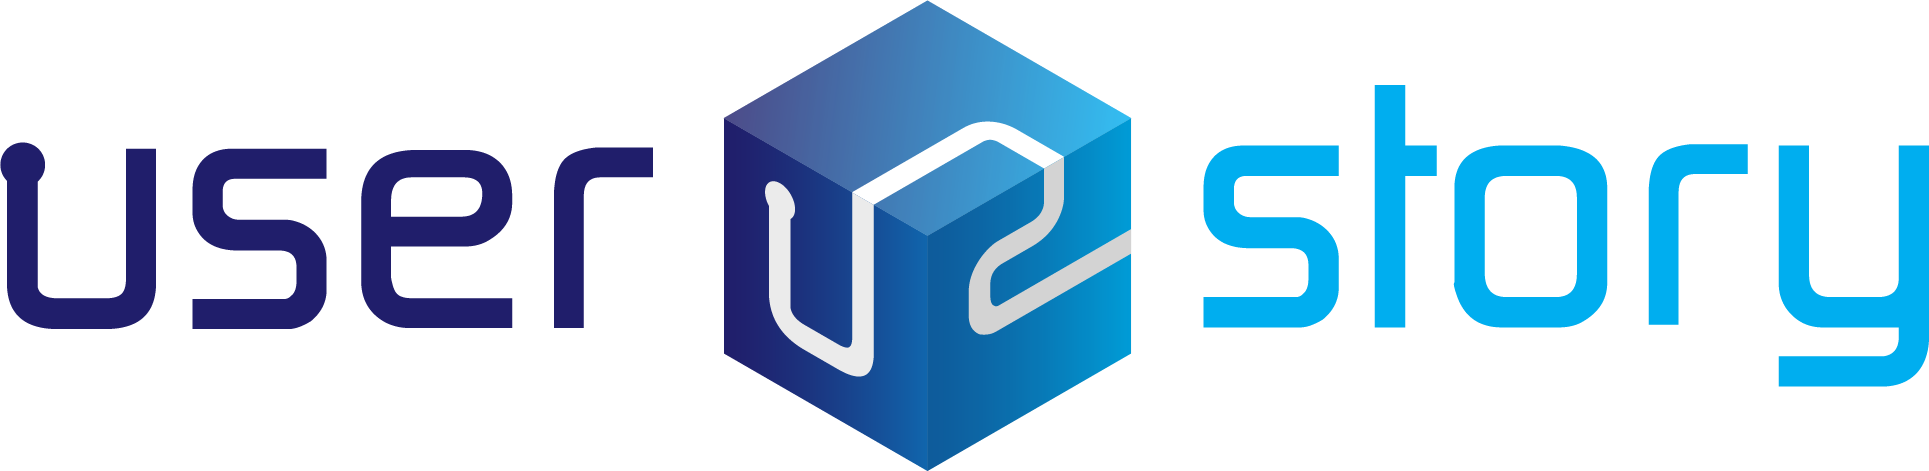 UserStory logo